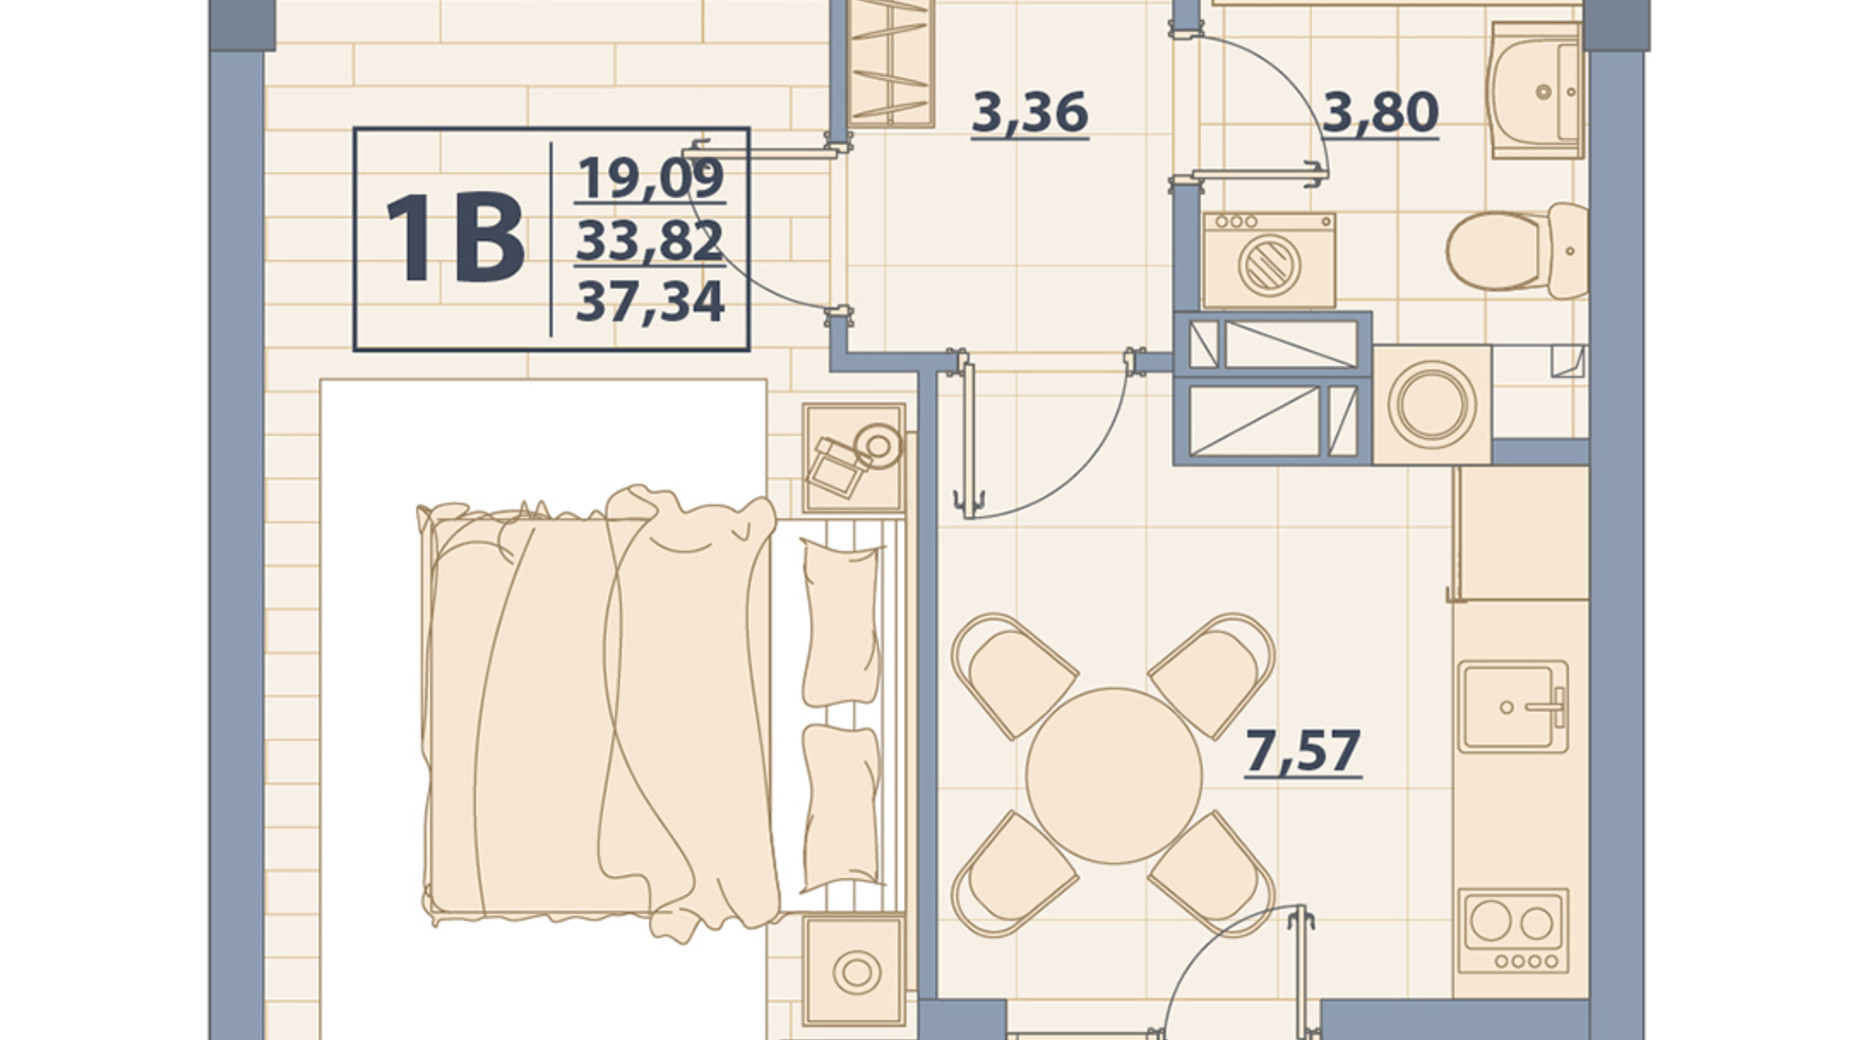 Планировка 1-комнатной квартиры в ЖК Centr City 37.34 м², фото 579638